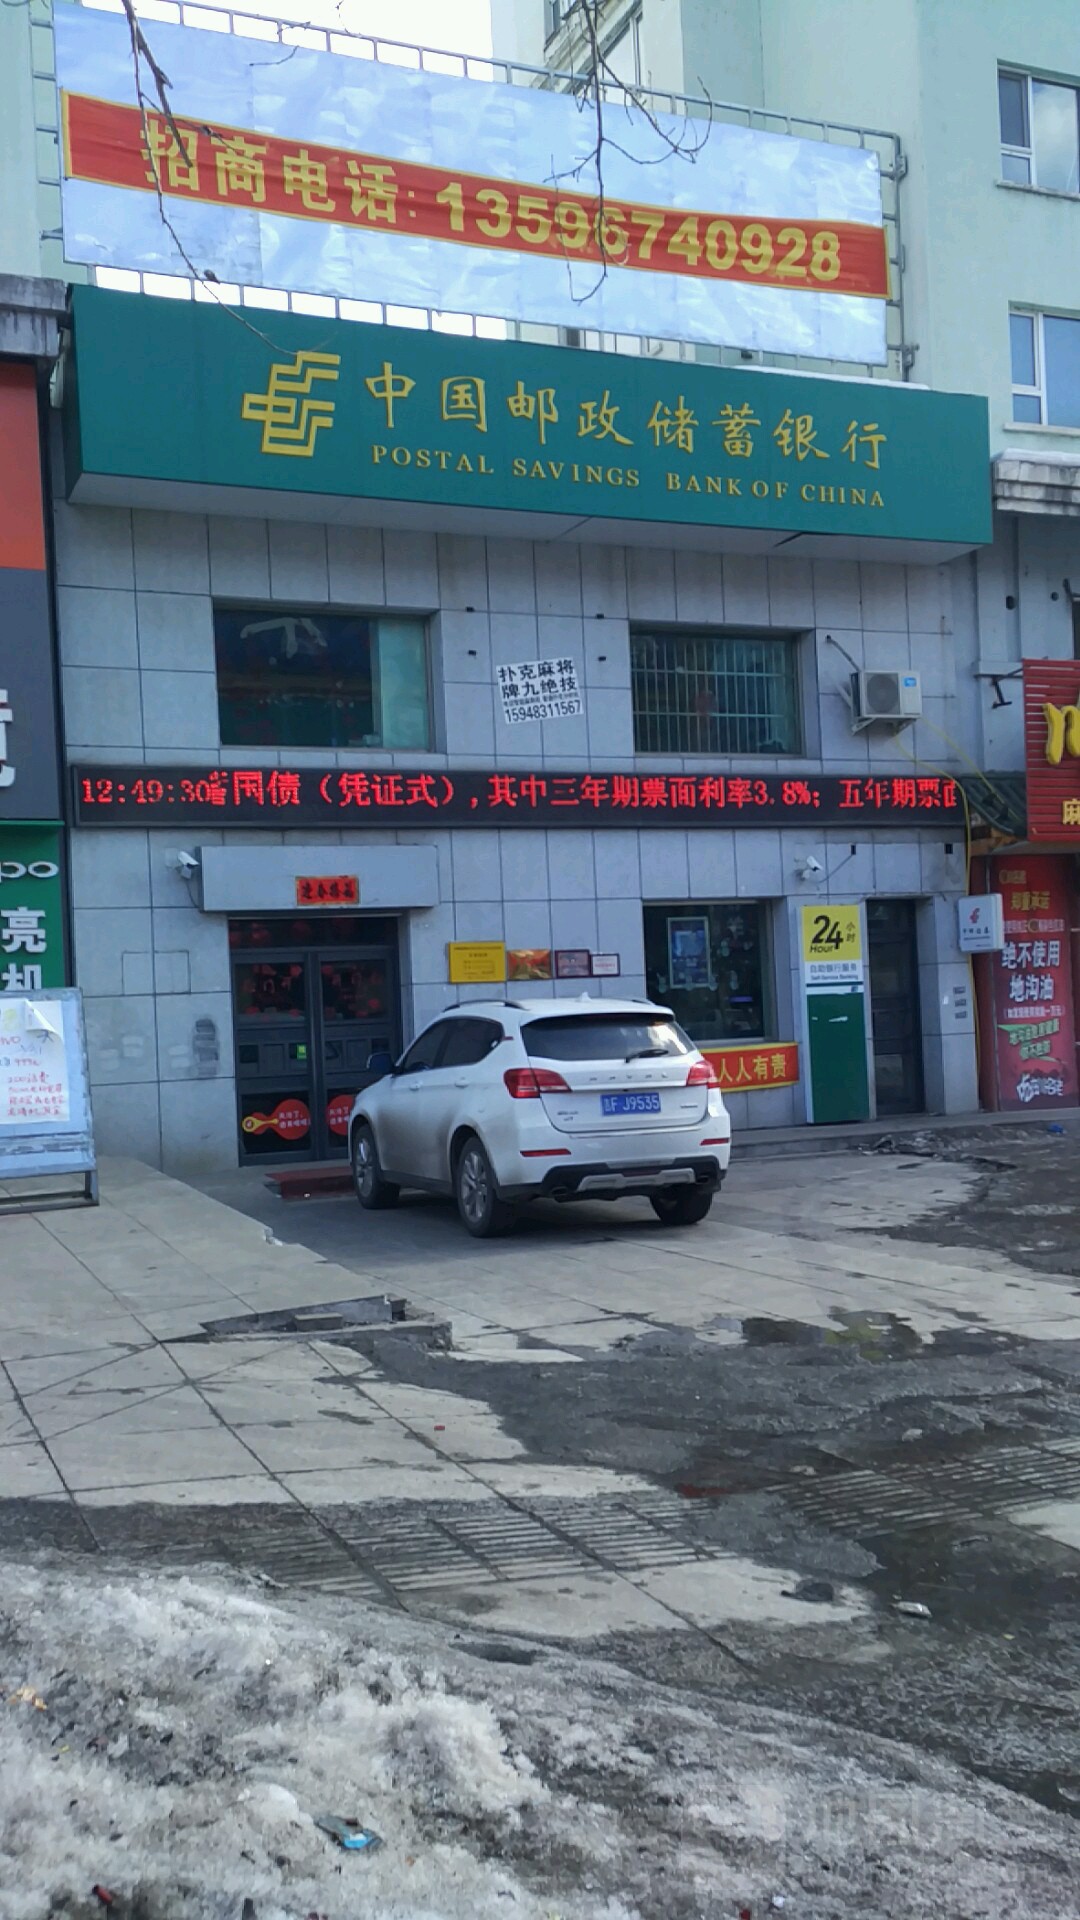 中国邮政储蓄银行(昌泰营业所)